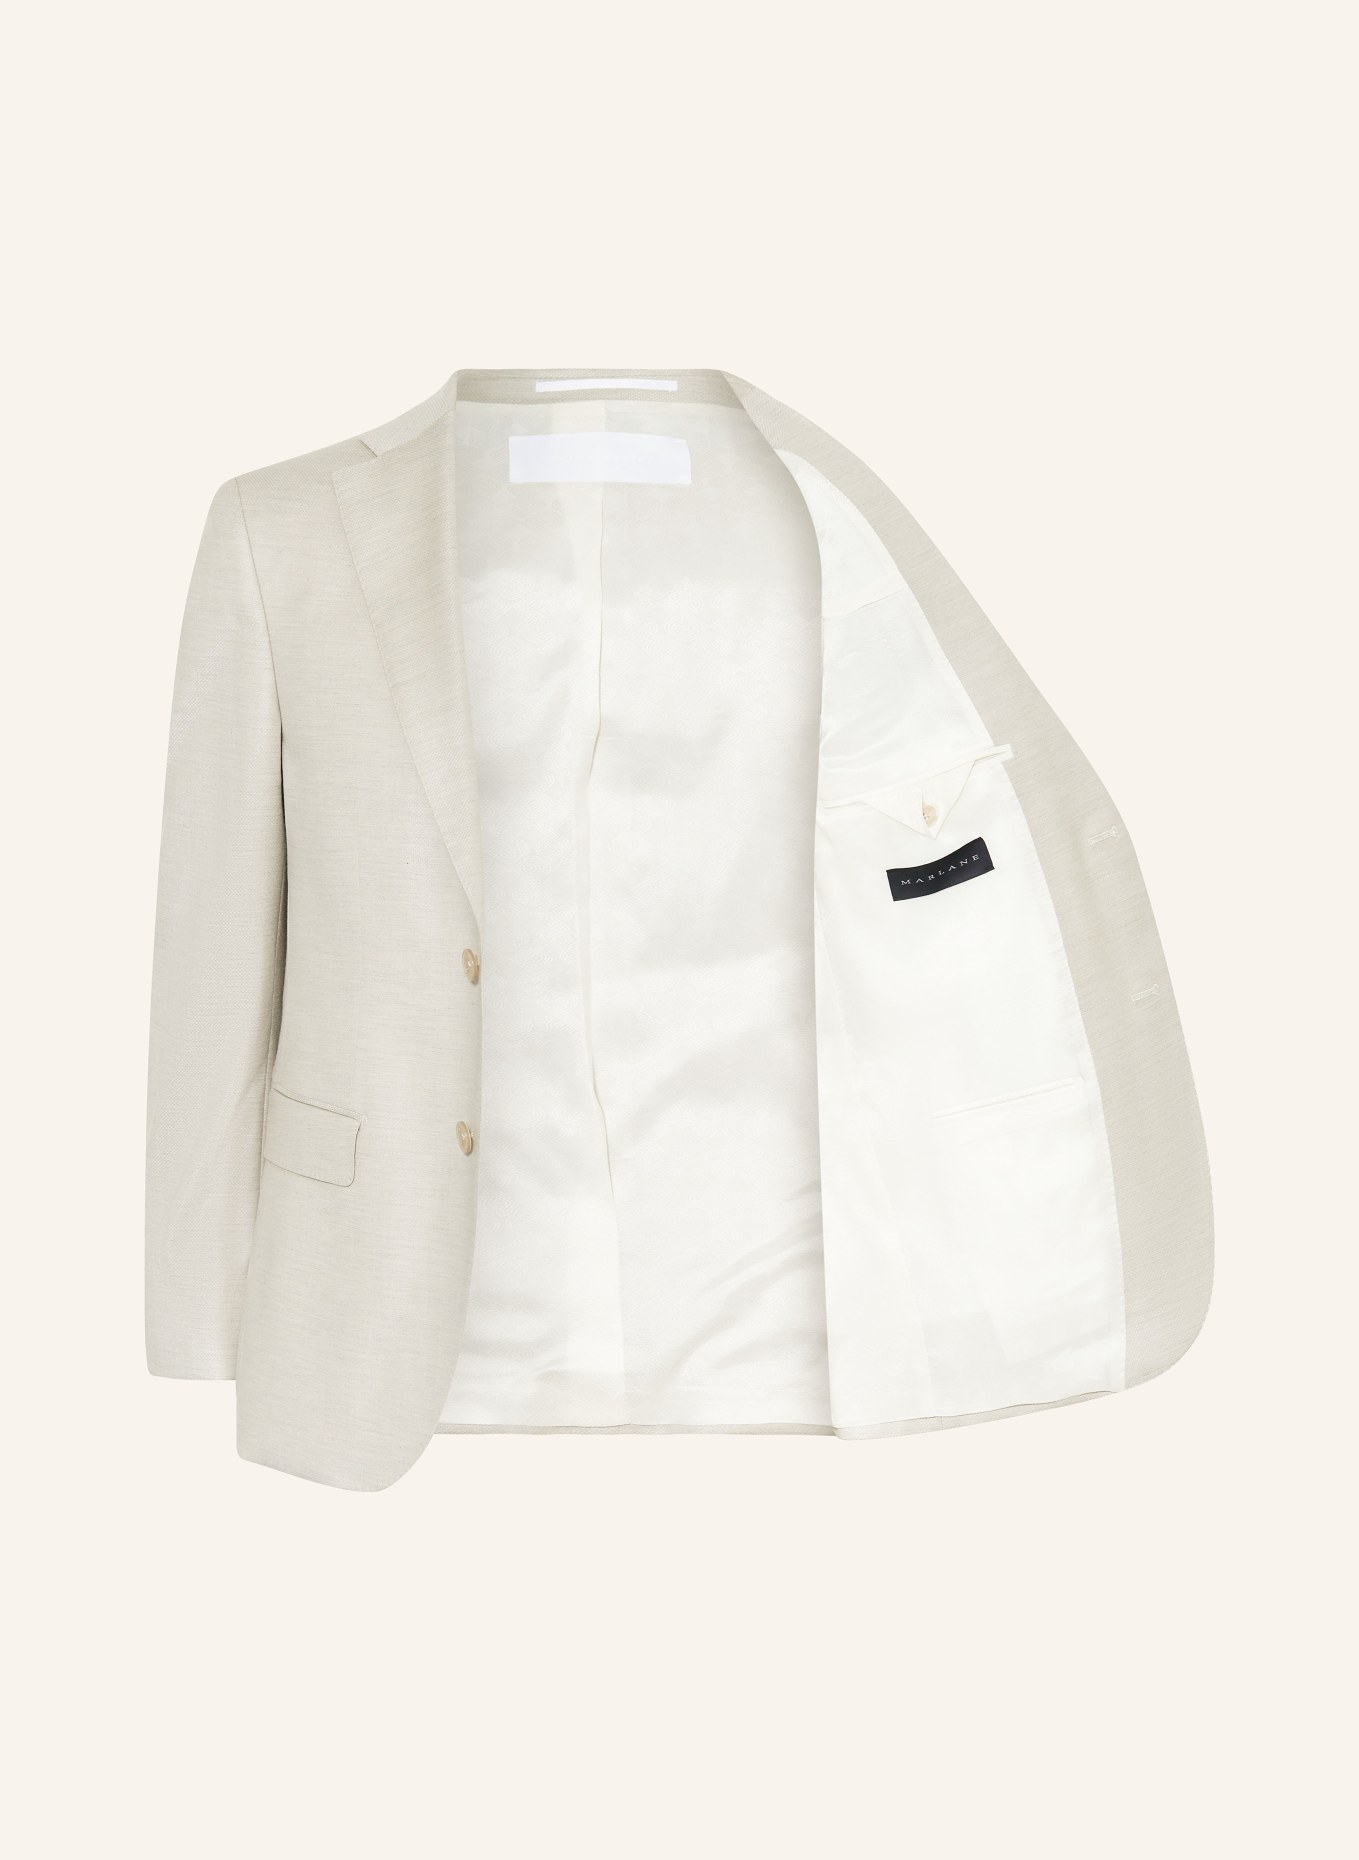 BALDESSARINI Suit jacket Slim Fit, Color: 8920 Irish Cream Pattern (Image 4)